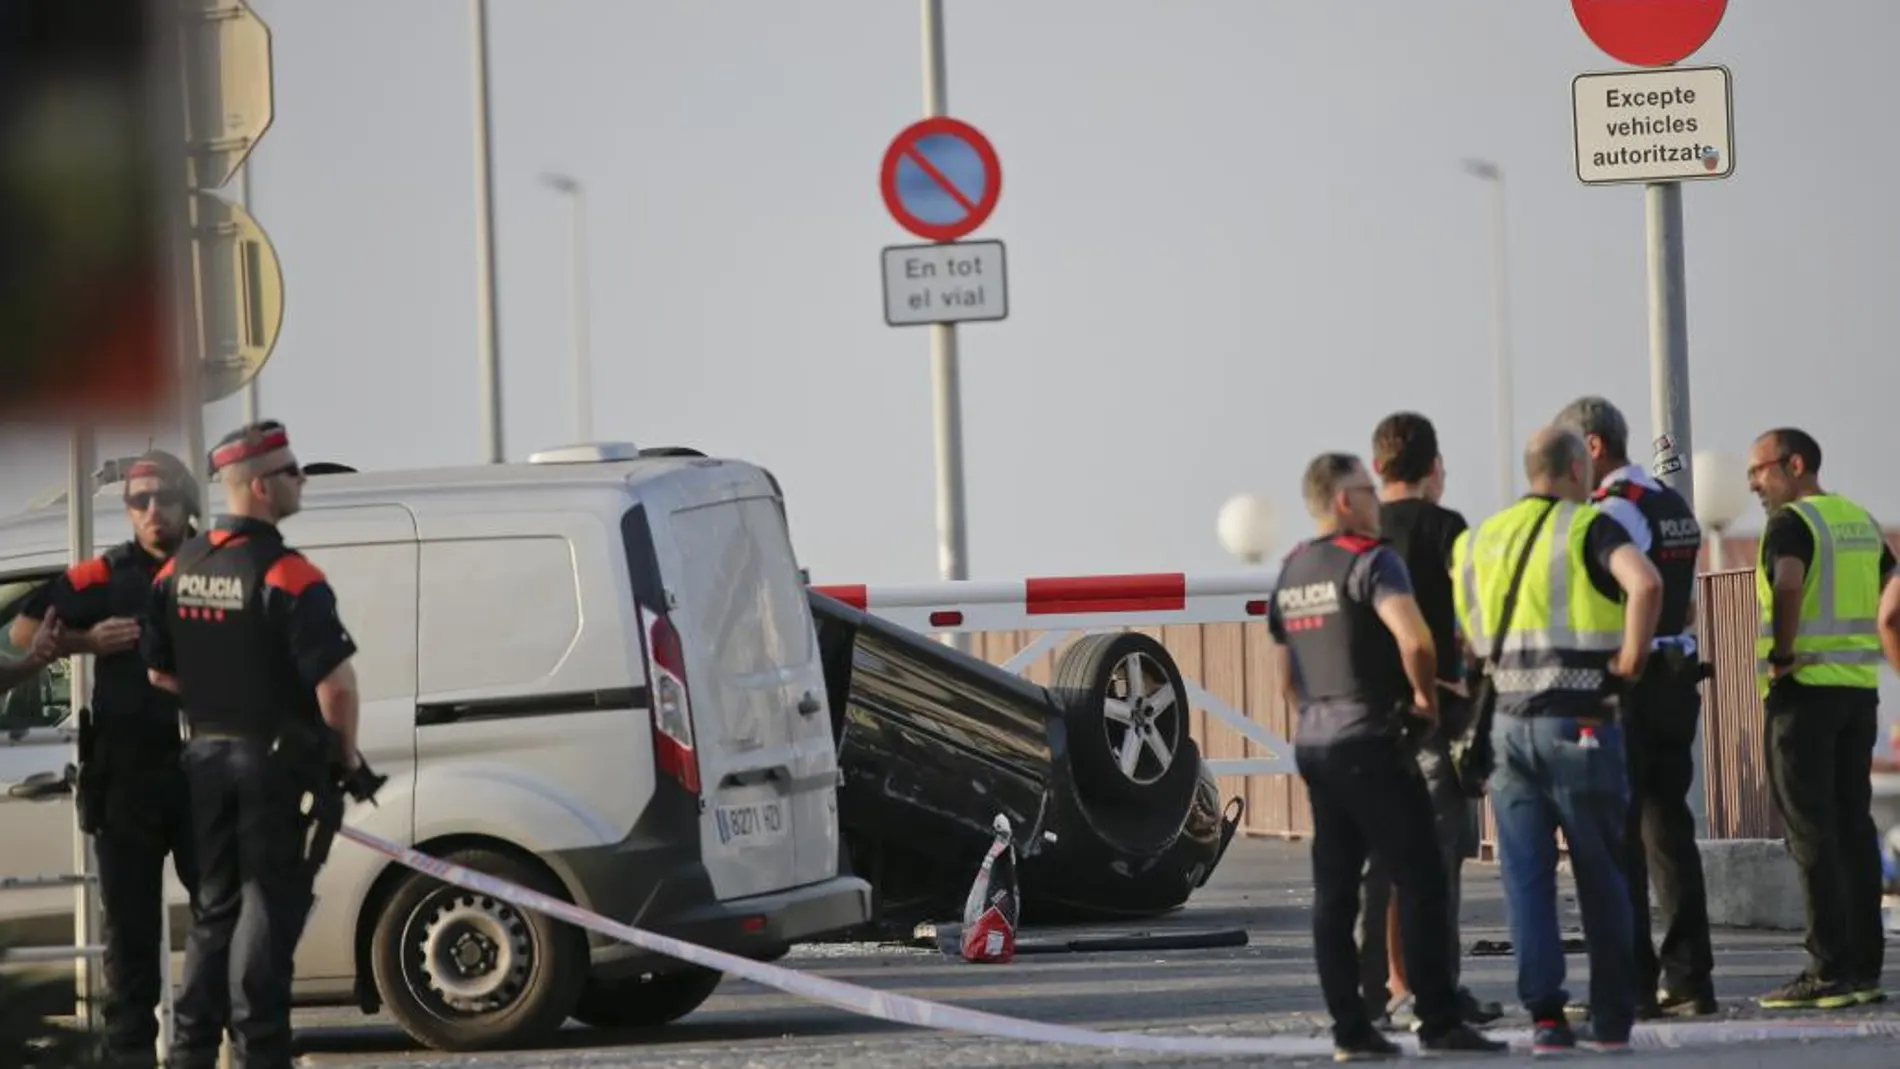 Los agentes, junto al coche en el que fueron interceptados los terroristas abatidos en Cambrils.